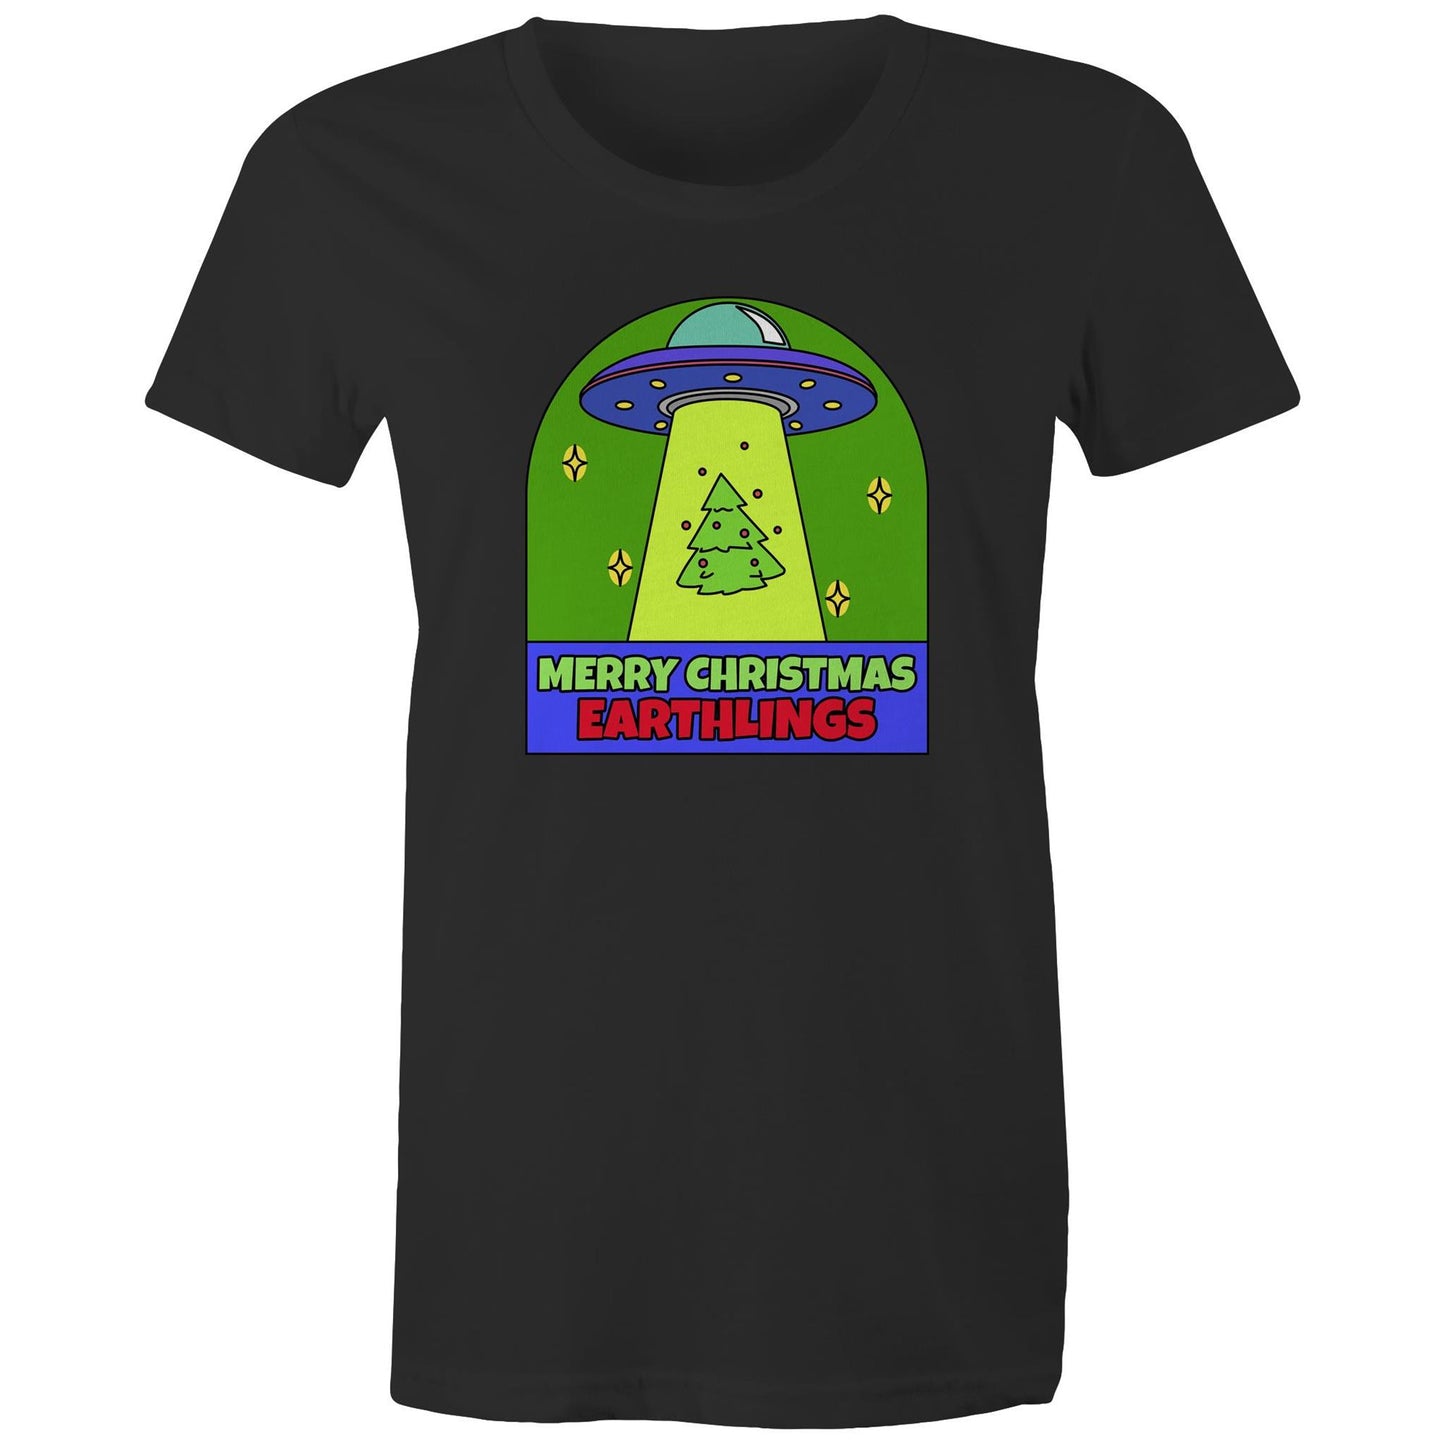 Merry Christmas Earthlings, UFO - Womens T-shirt Black Christmas Womens T-shirt Merry Christmas